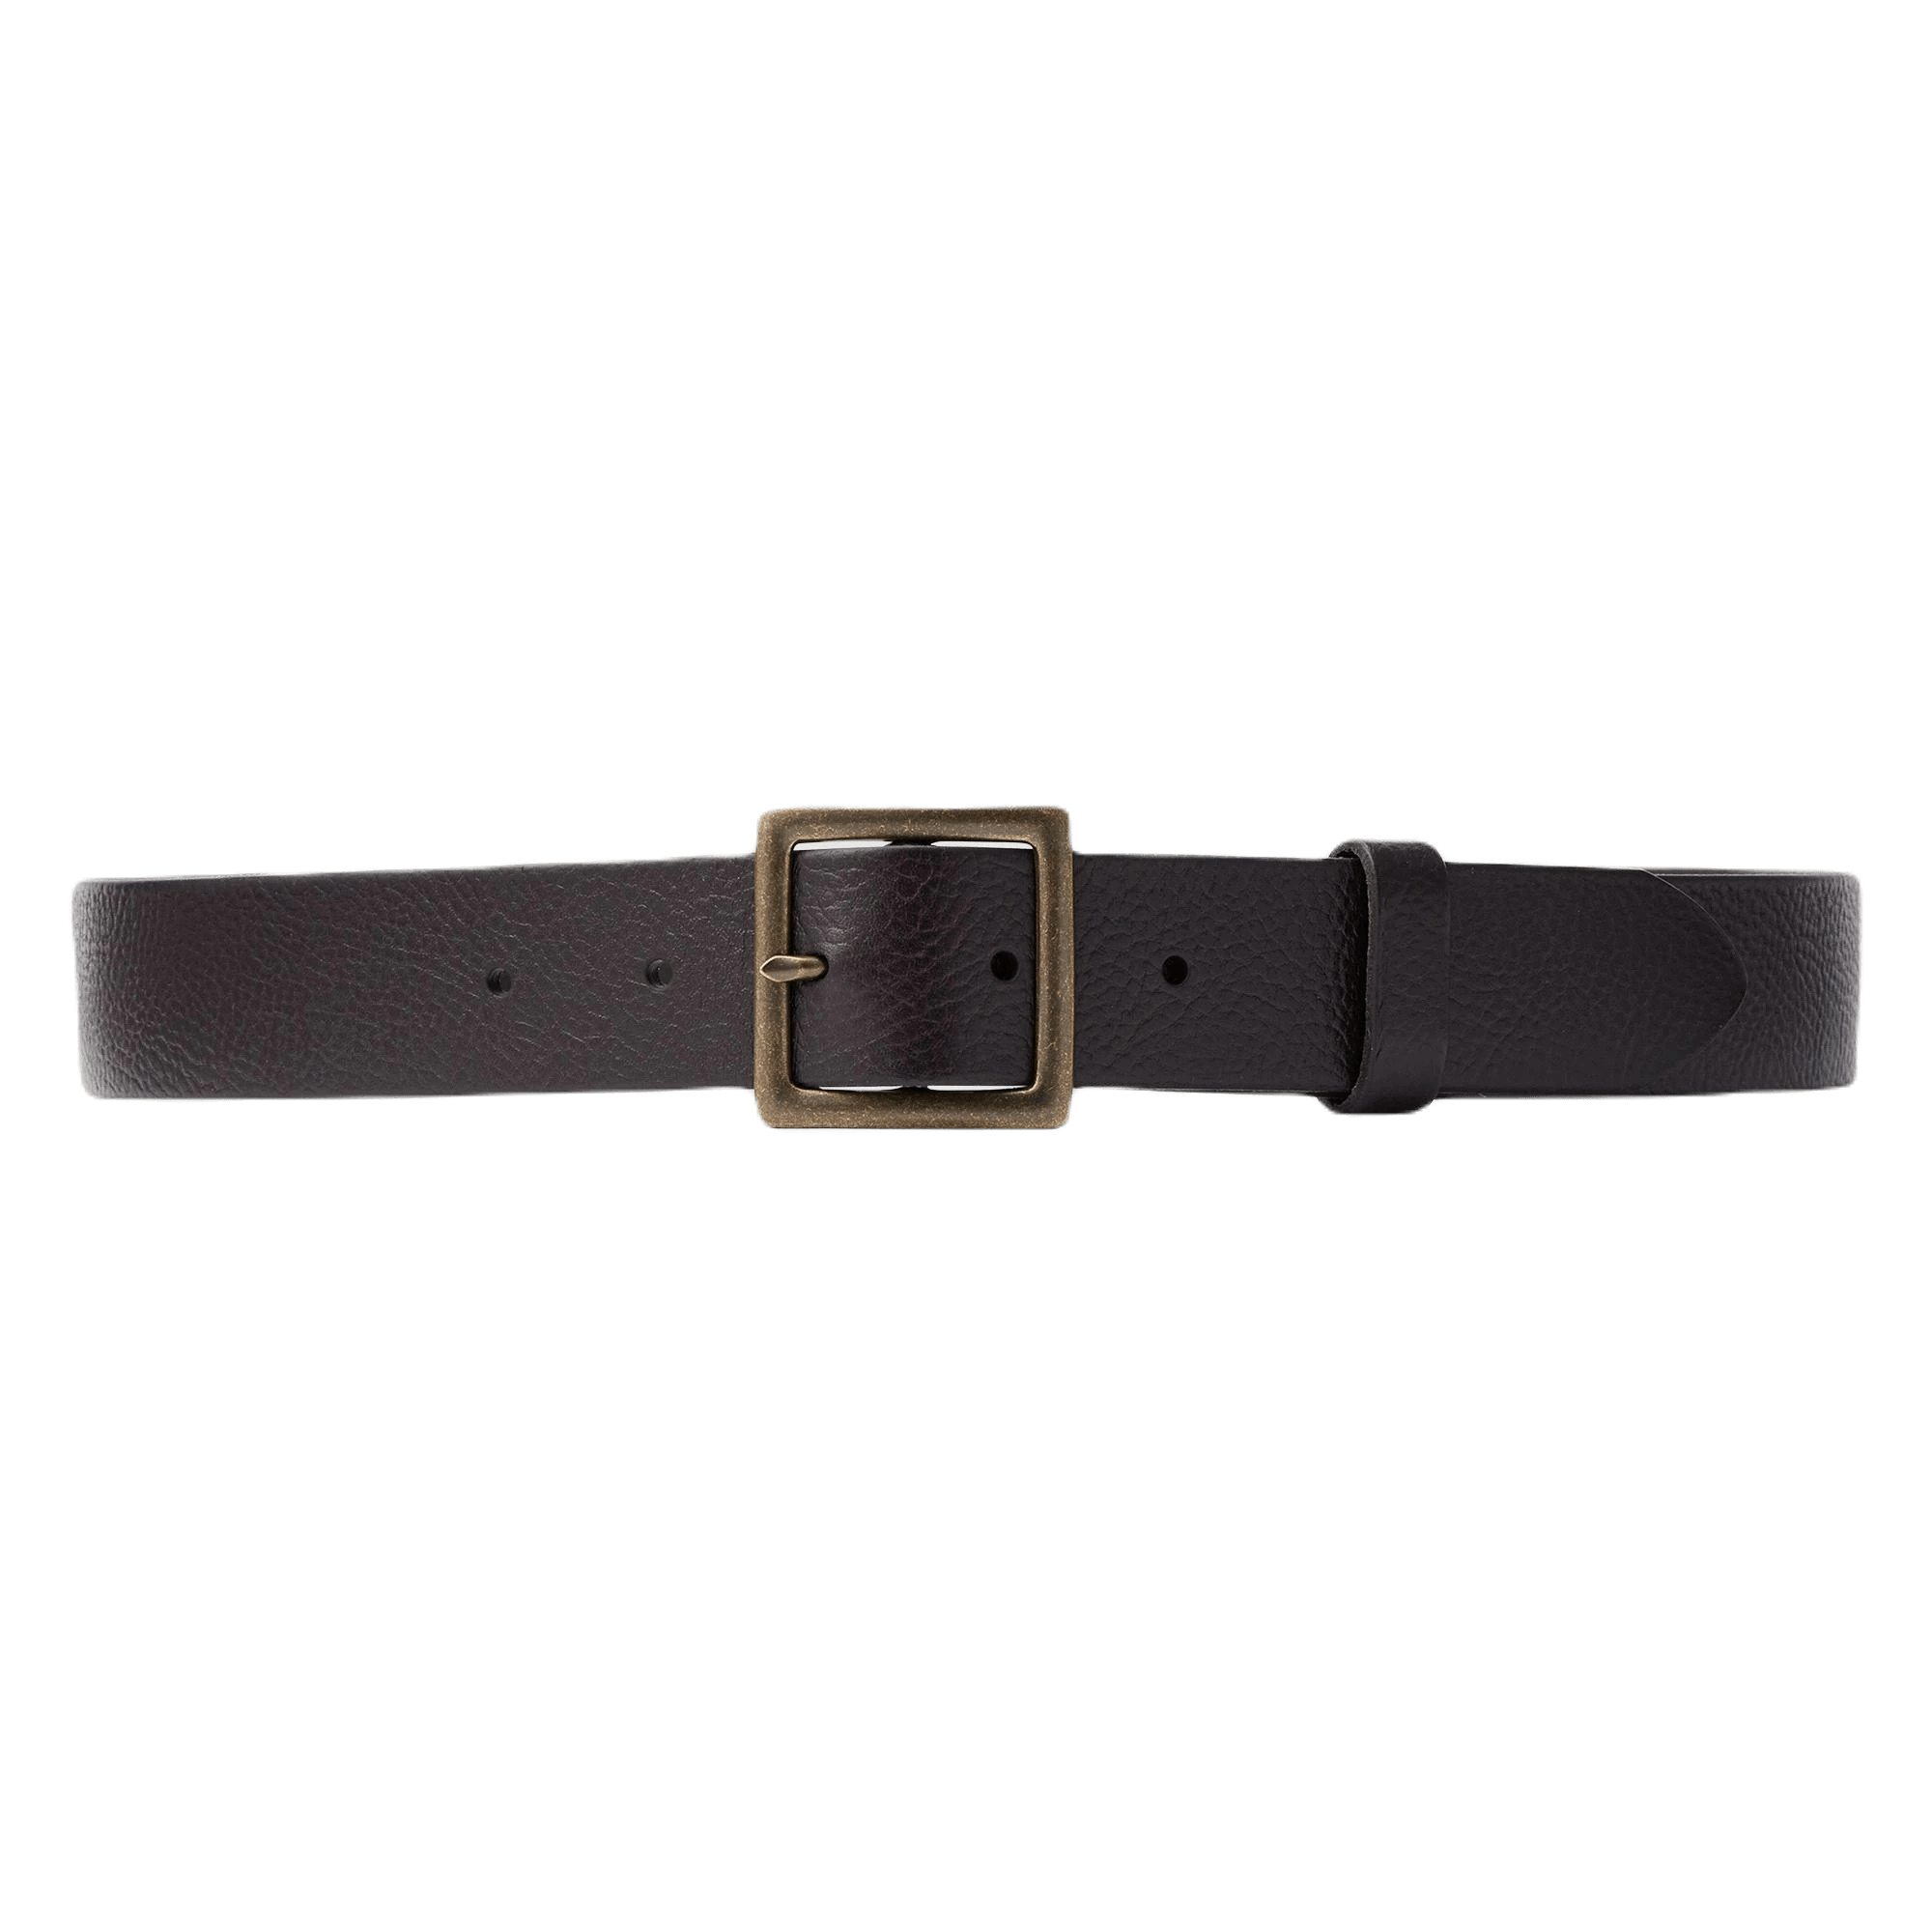 Ремень Uniqlo Italian Leather Vintage Style, темно-коричневый цена и фото